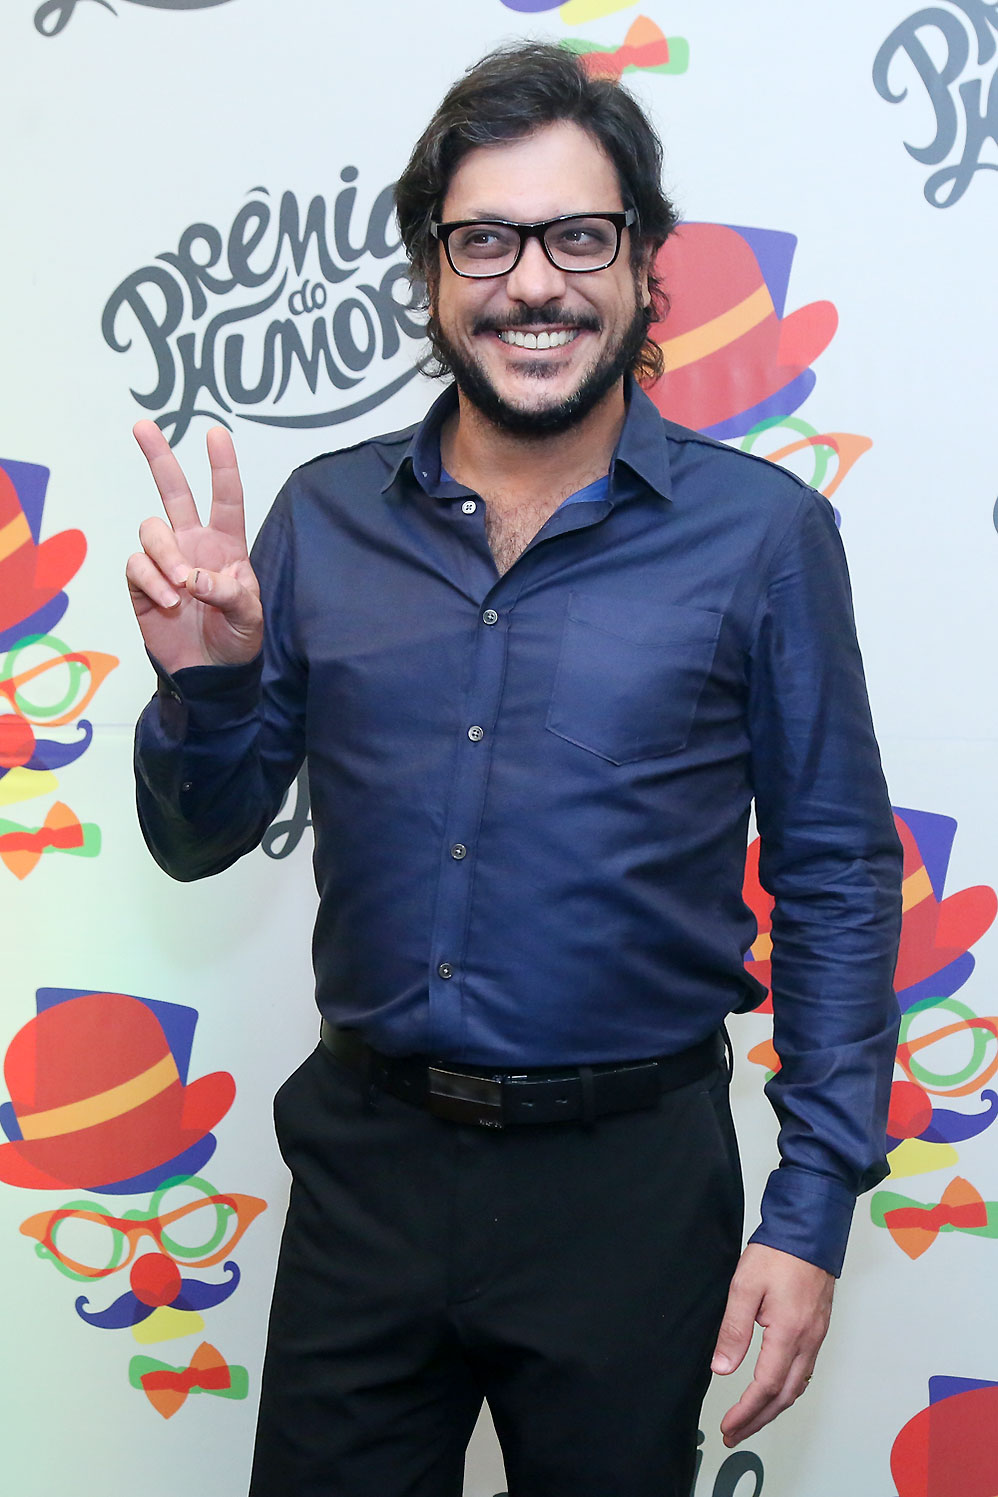 Famosos participam do Prêmio do Humor, no Rio